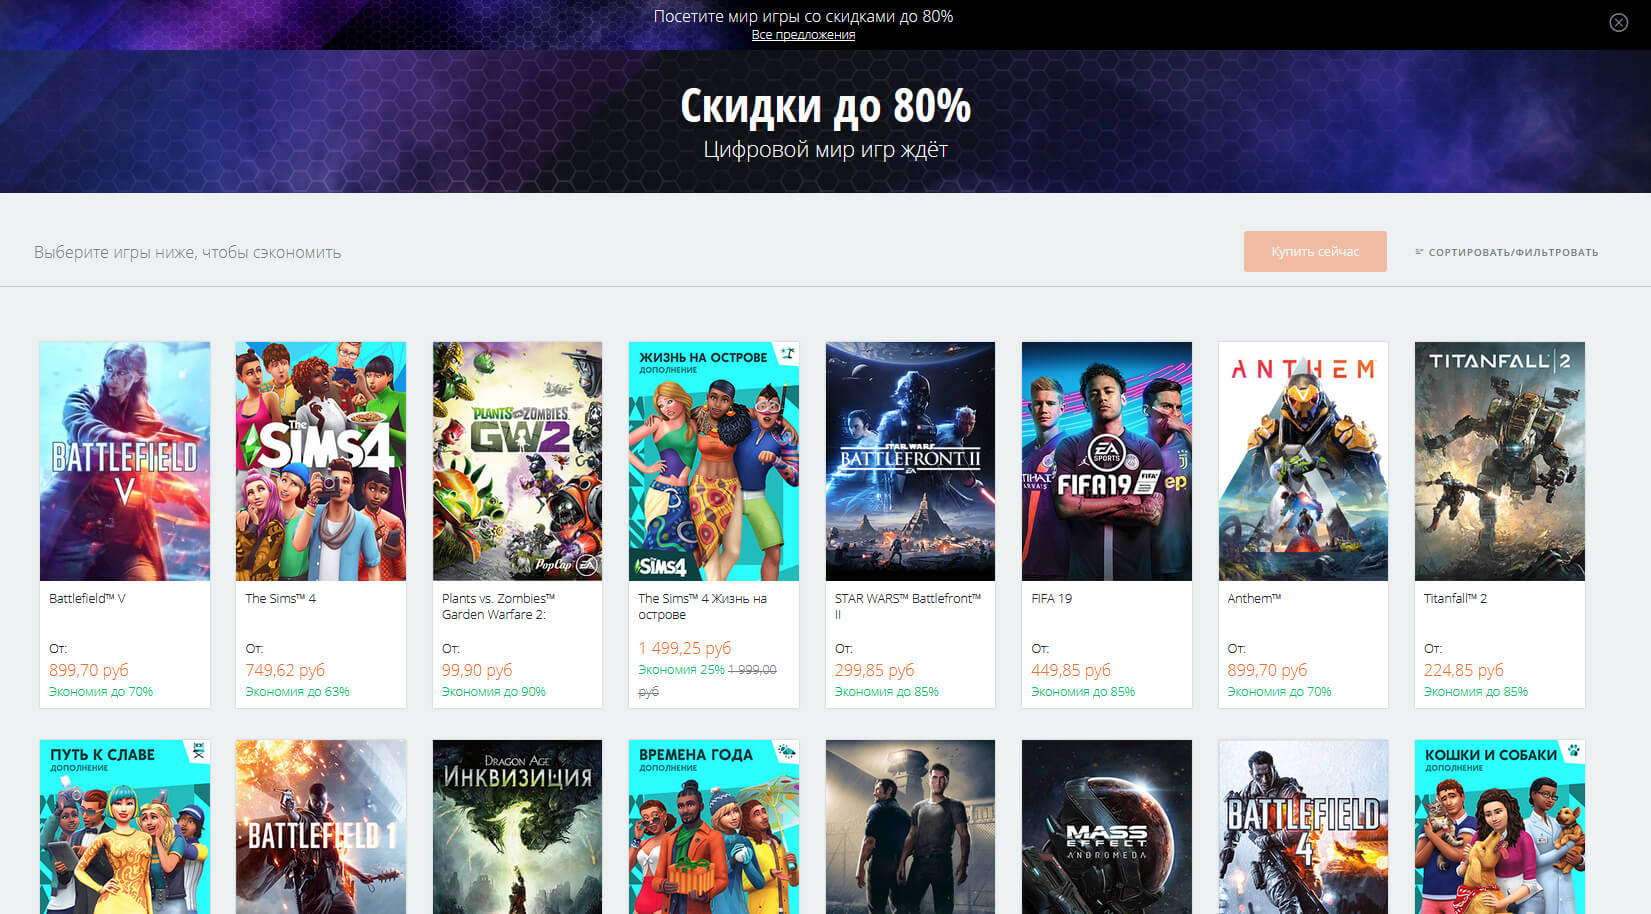 Battlefield V и Anthem за 899 рублей — в Origin началась распродажа (фото)